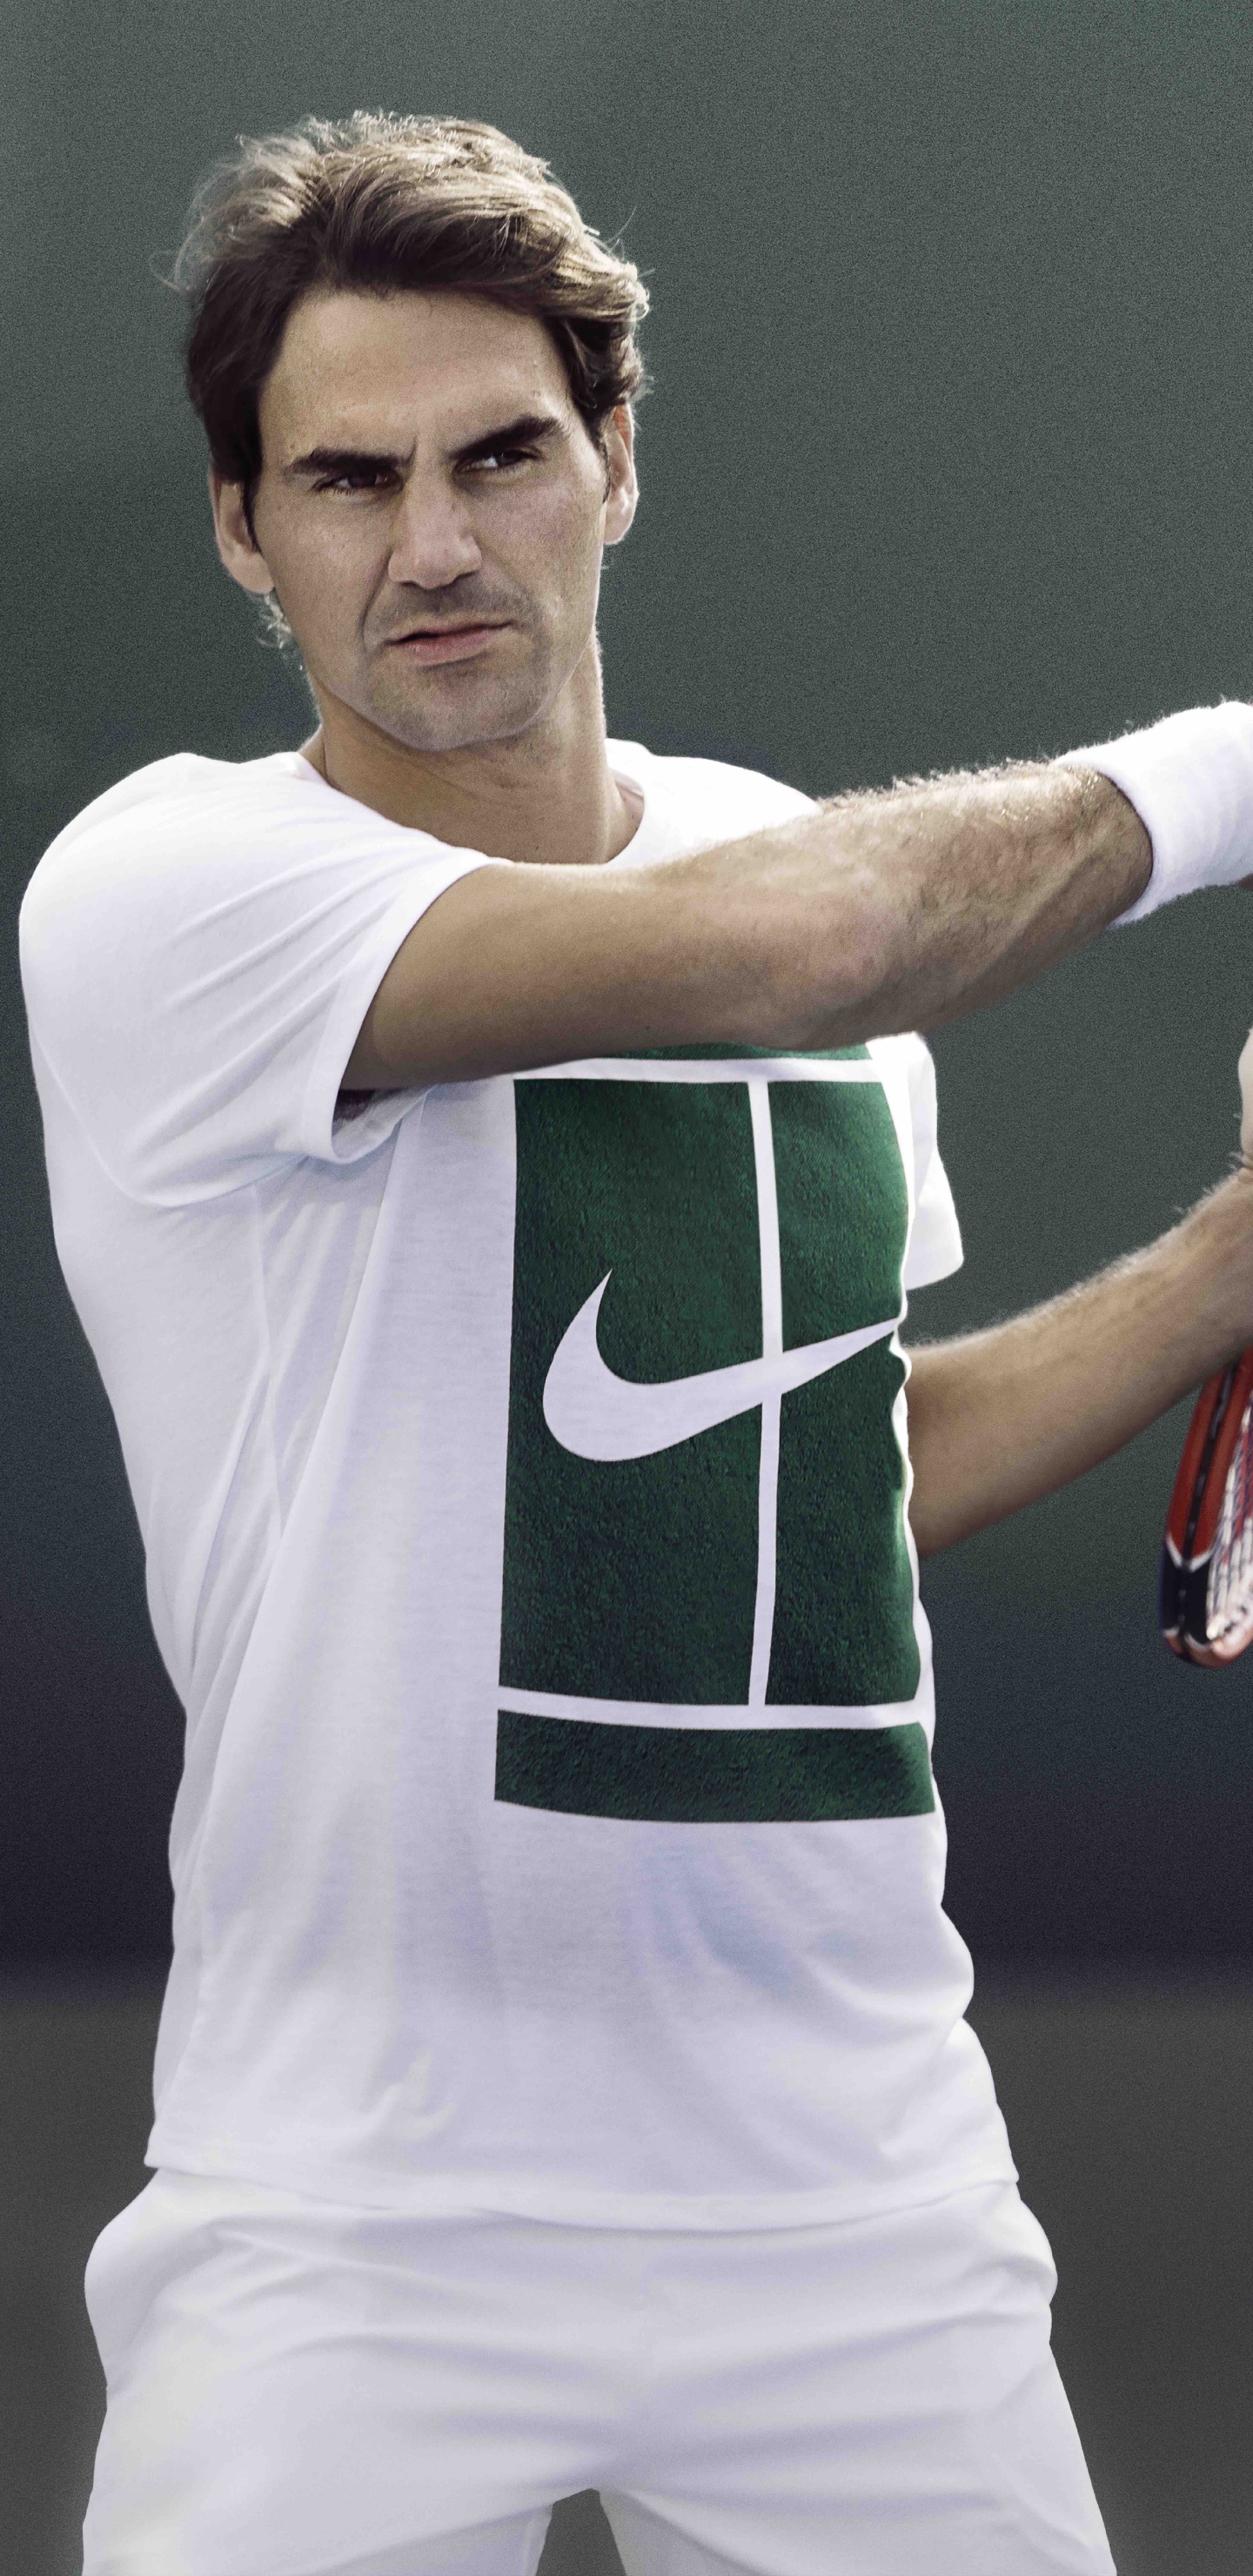 Homme en Chemise Jersey Nike Vert et Blanc Tenant Une Raquette de Tennis Rouge et Blanc. Wallpaper in 1440x2960 Resolution